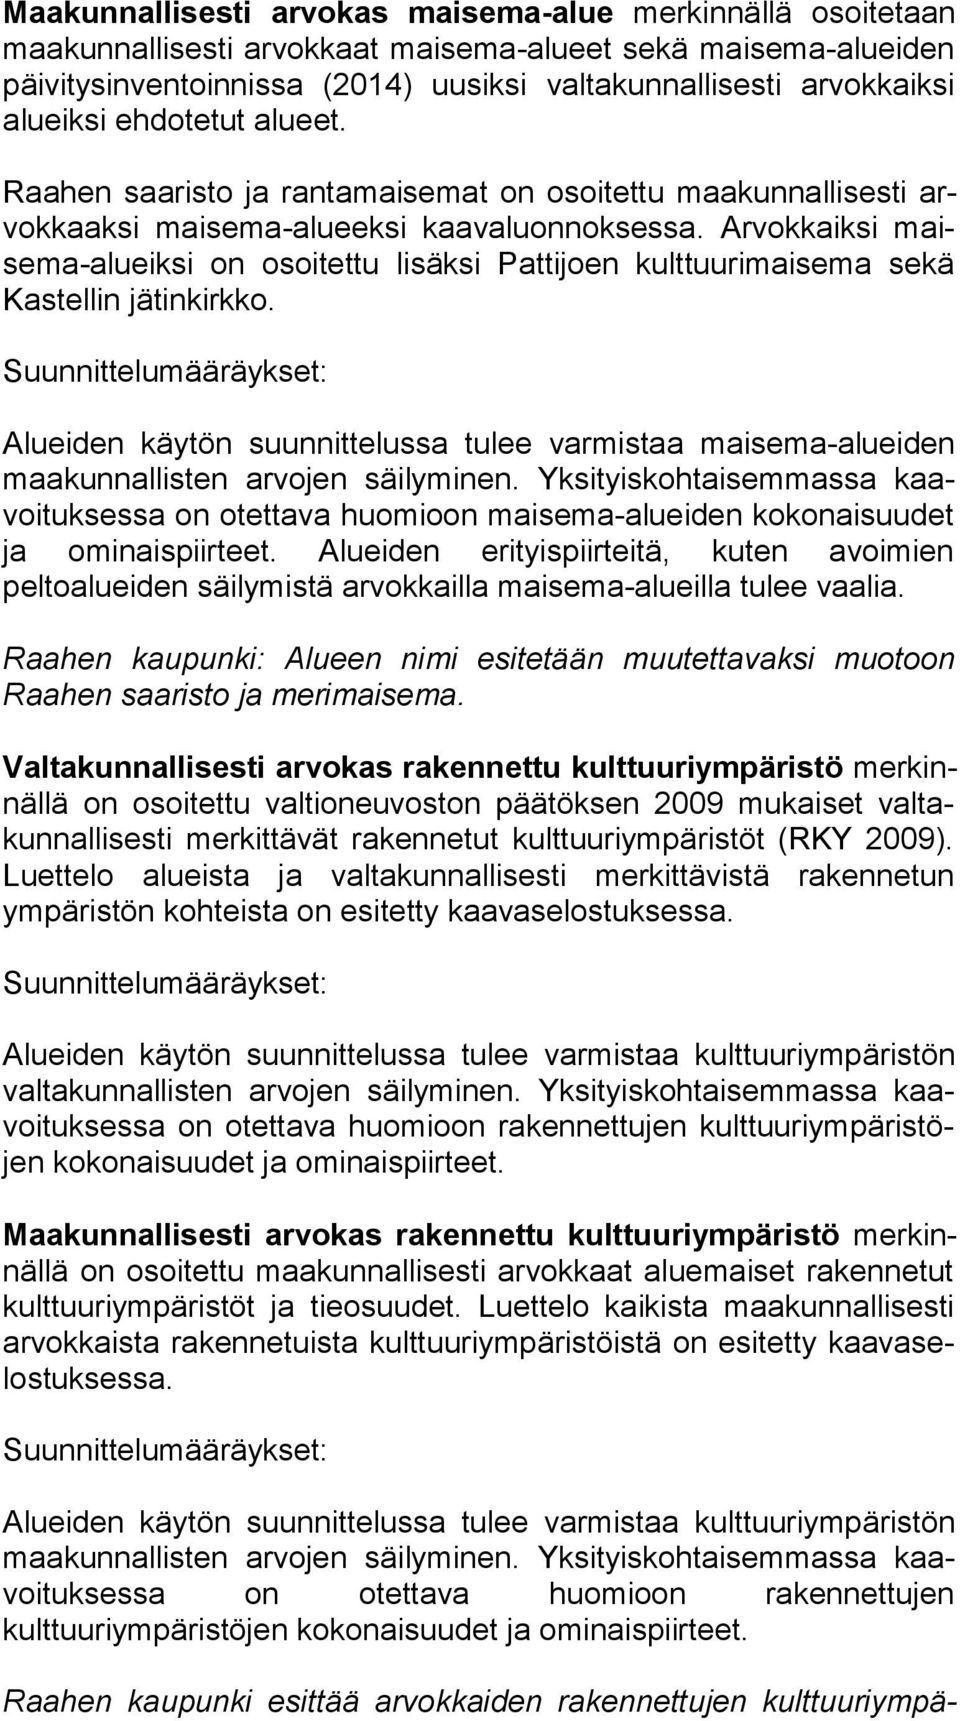 Arvokkaiksi maise ma-alueik si on osoitettu lisäksi Pattijoen kulttuurimaisema sekä Kas tel lin jätinkirkko.